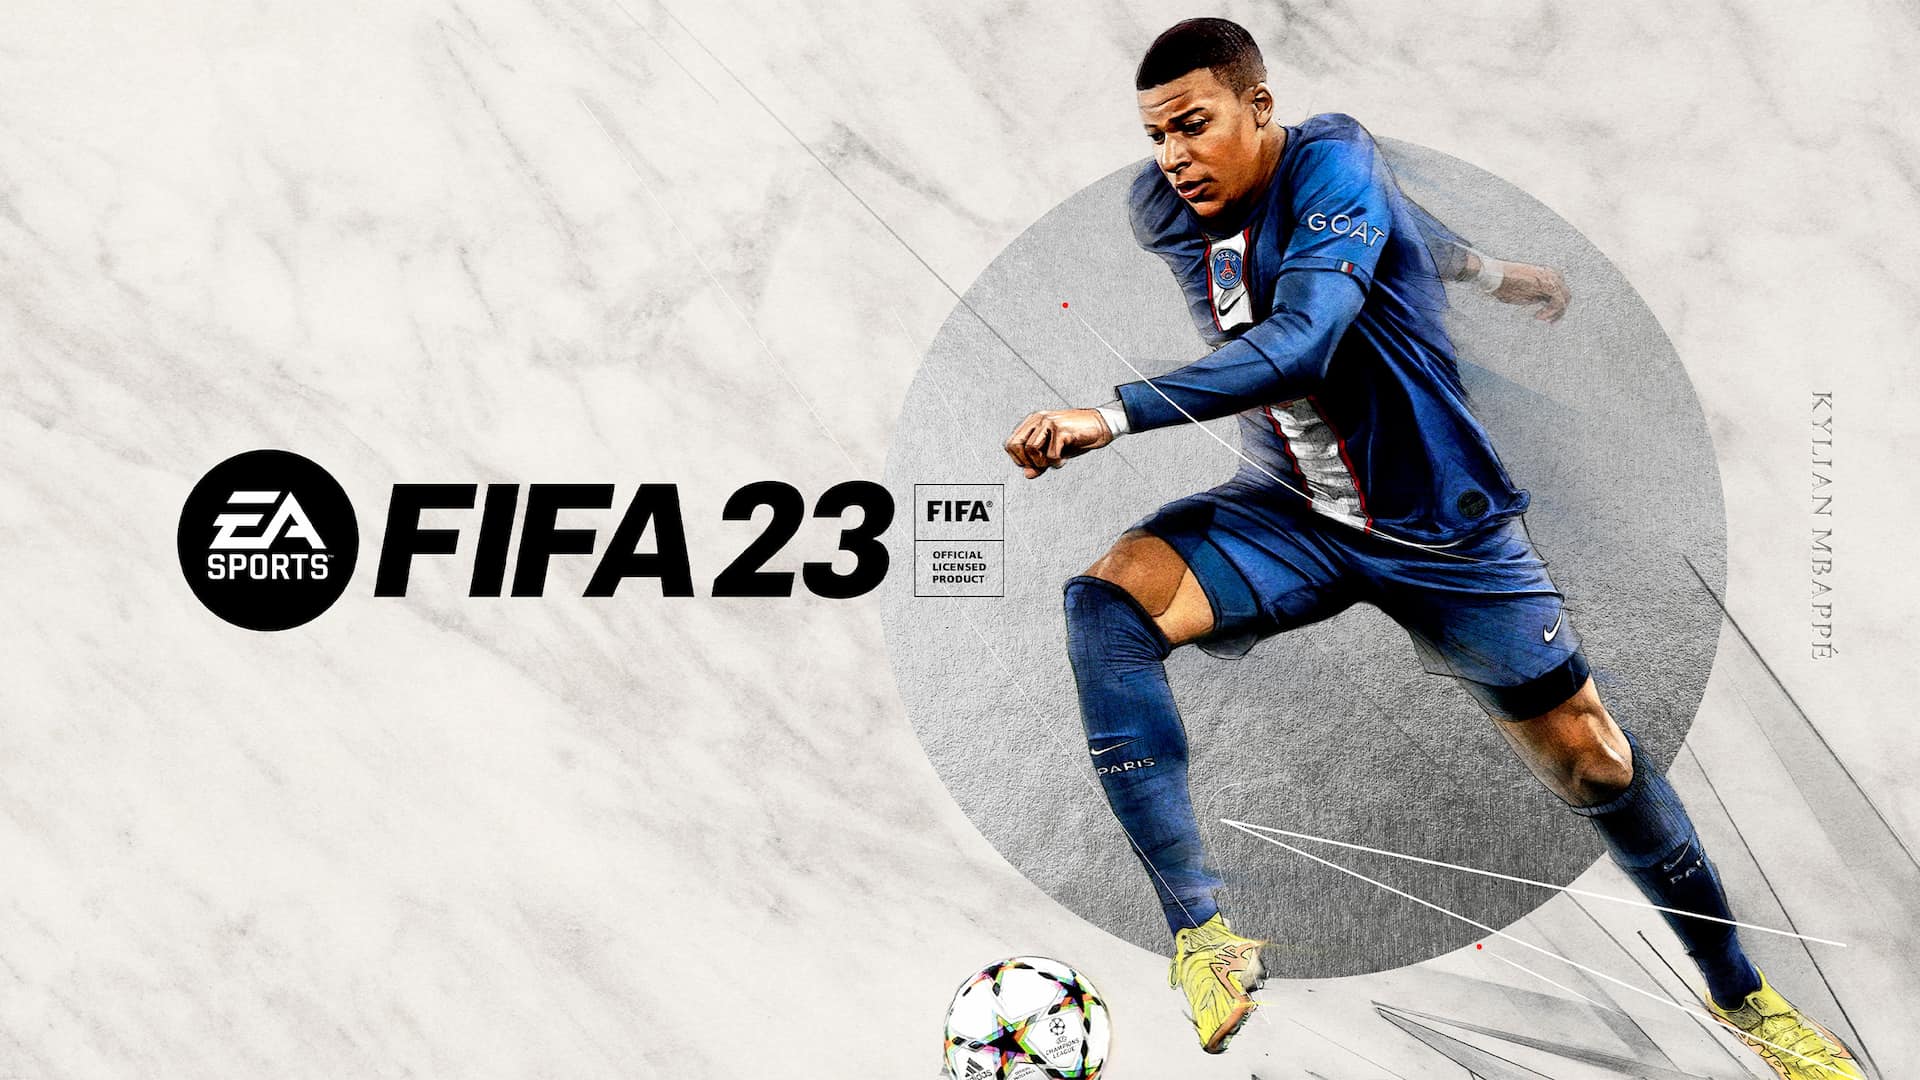 FIFA 22: a partir de hoje você pode jogar por 10 horas o game antes do  lançamento oficial